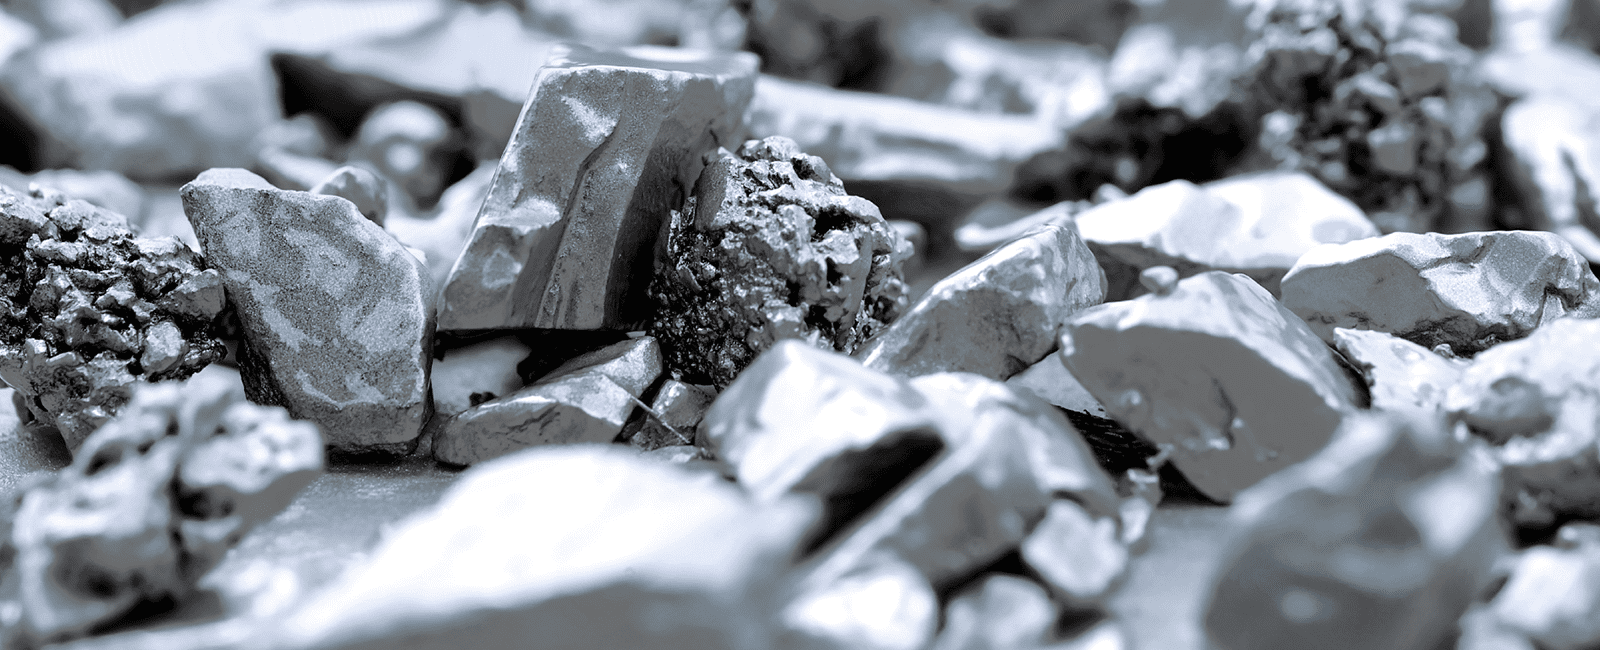 Symbolbild für nachhaltige Materialien mit grau/schwarzen Steinen © iStock: Oat_Phawat 